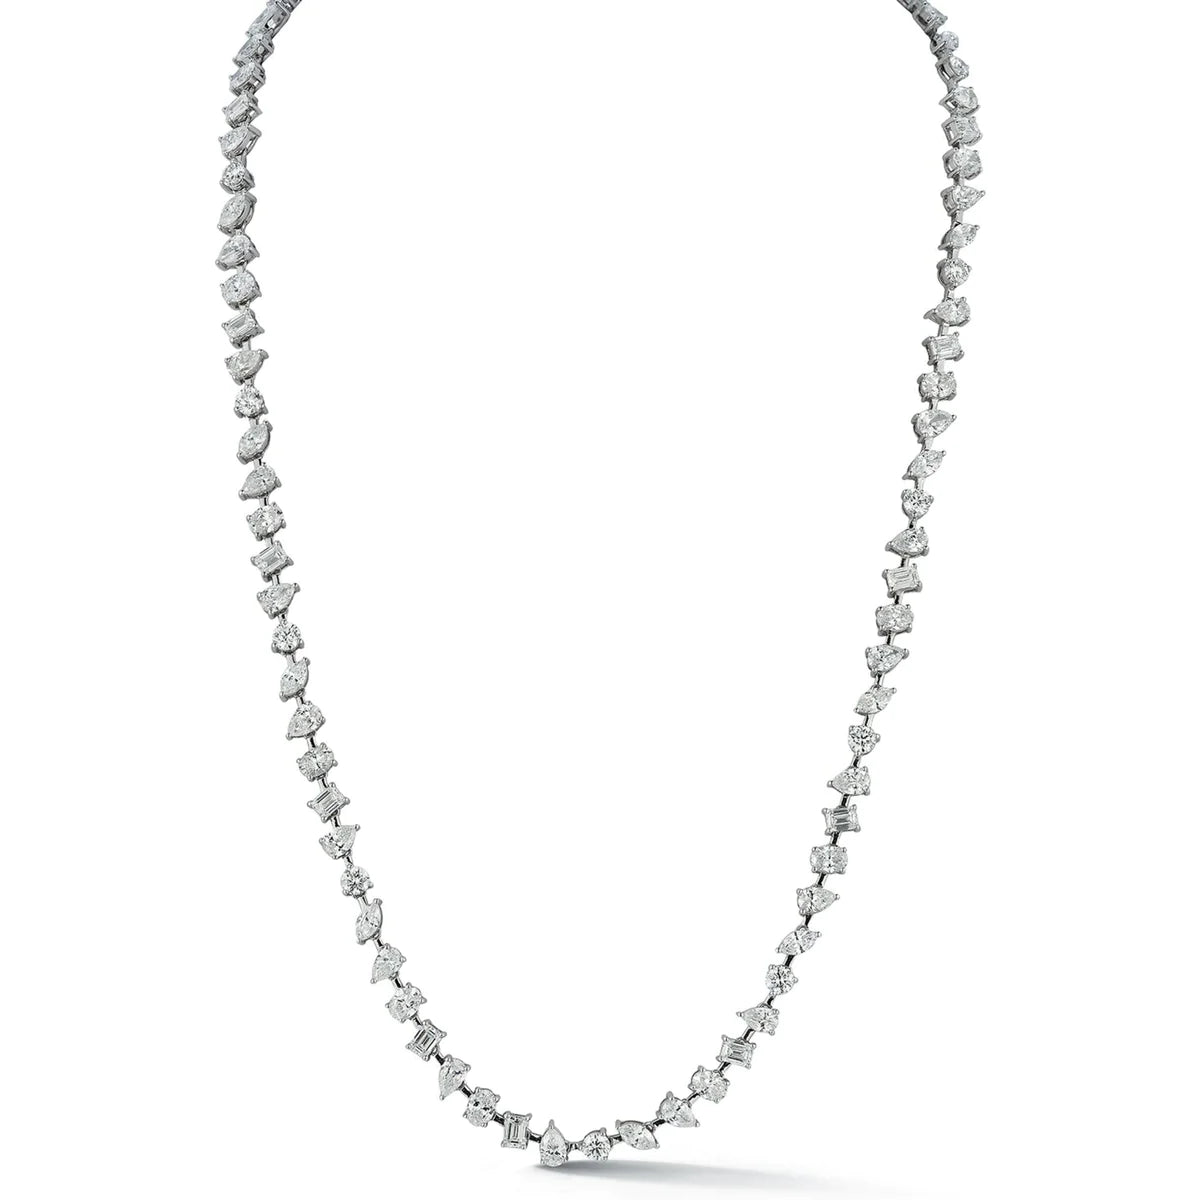 Multi-shape tennis necklace